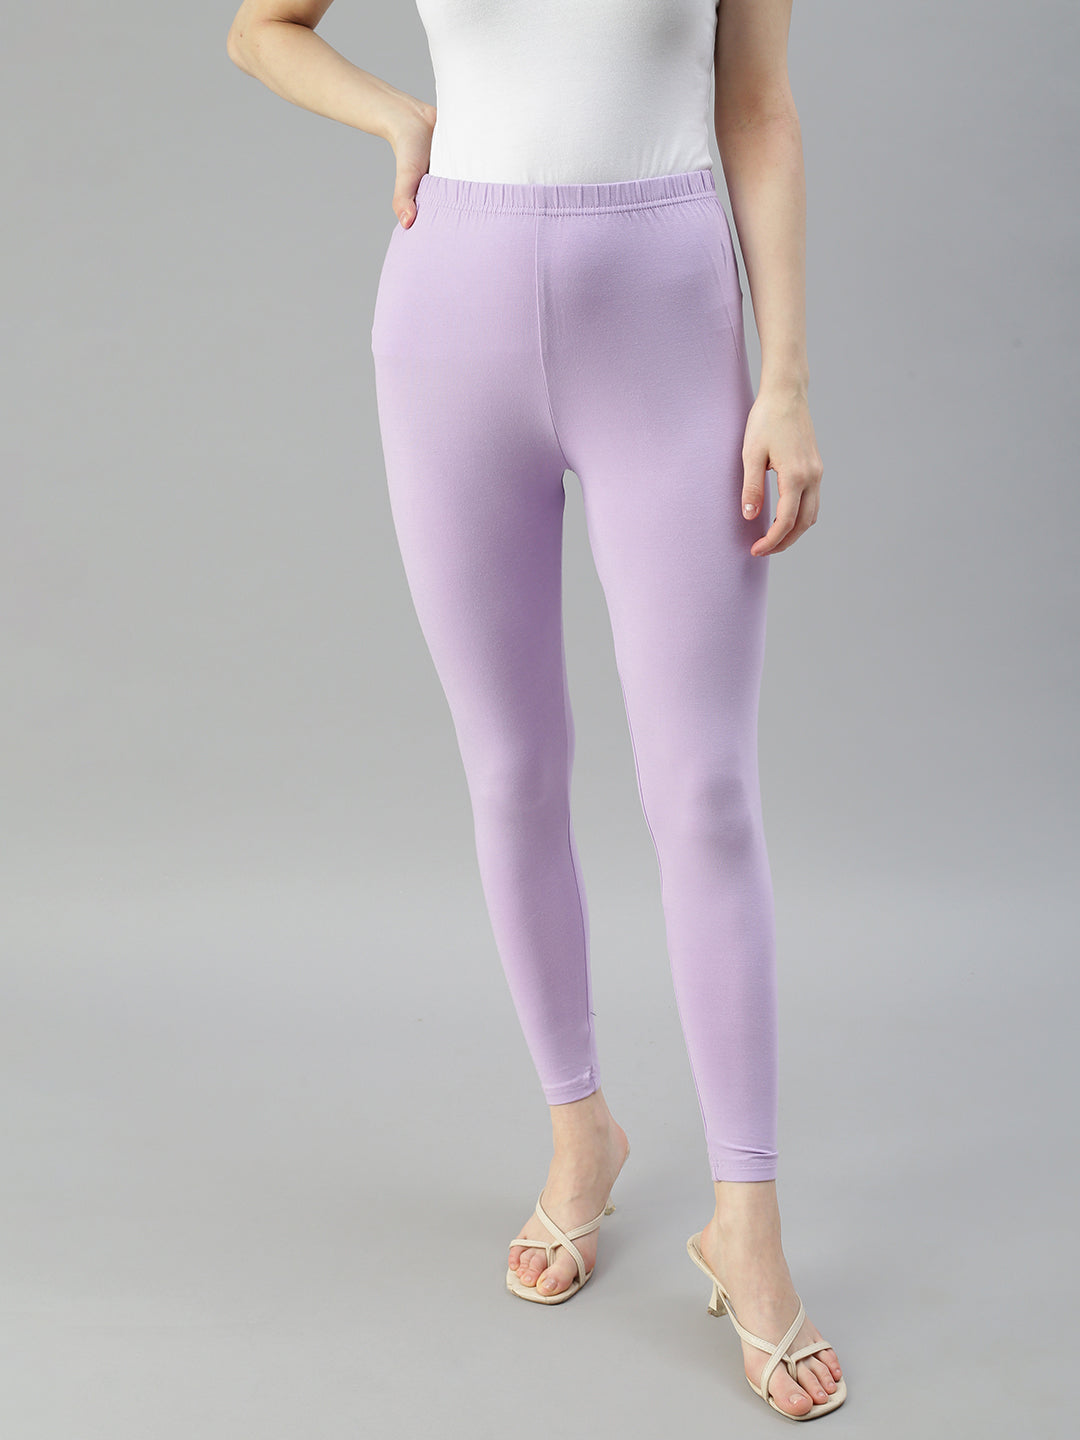 Danna Leggings (Lavender) - Laura's Boutique, Inc